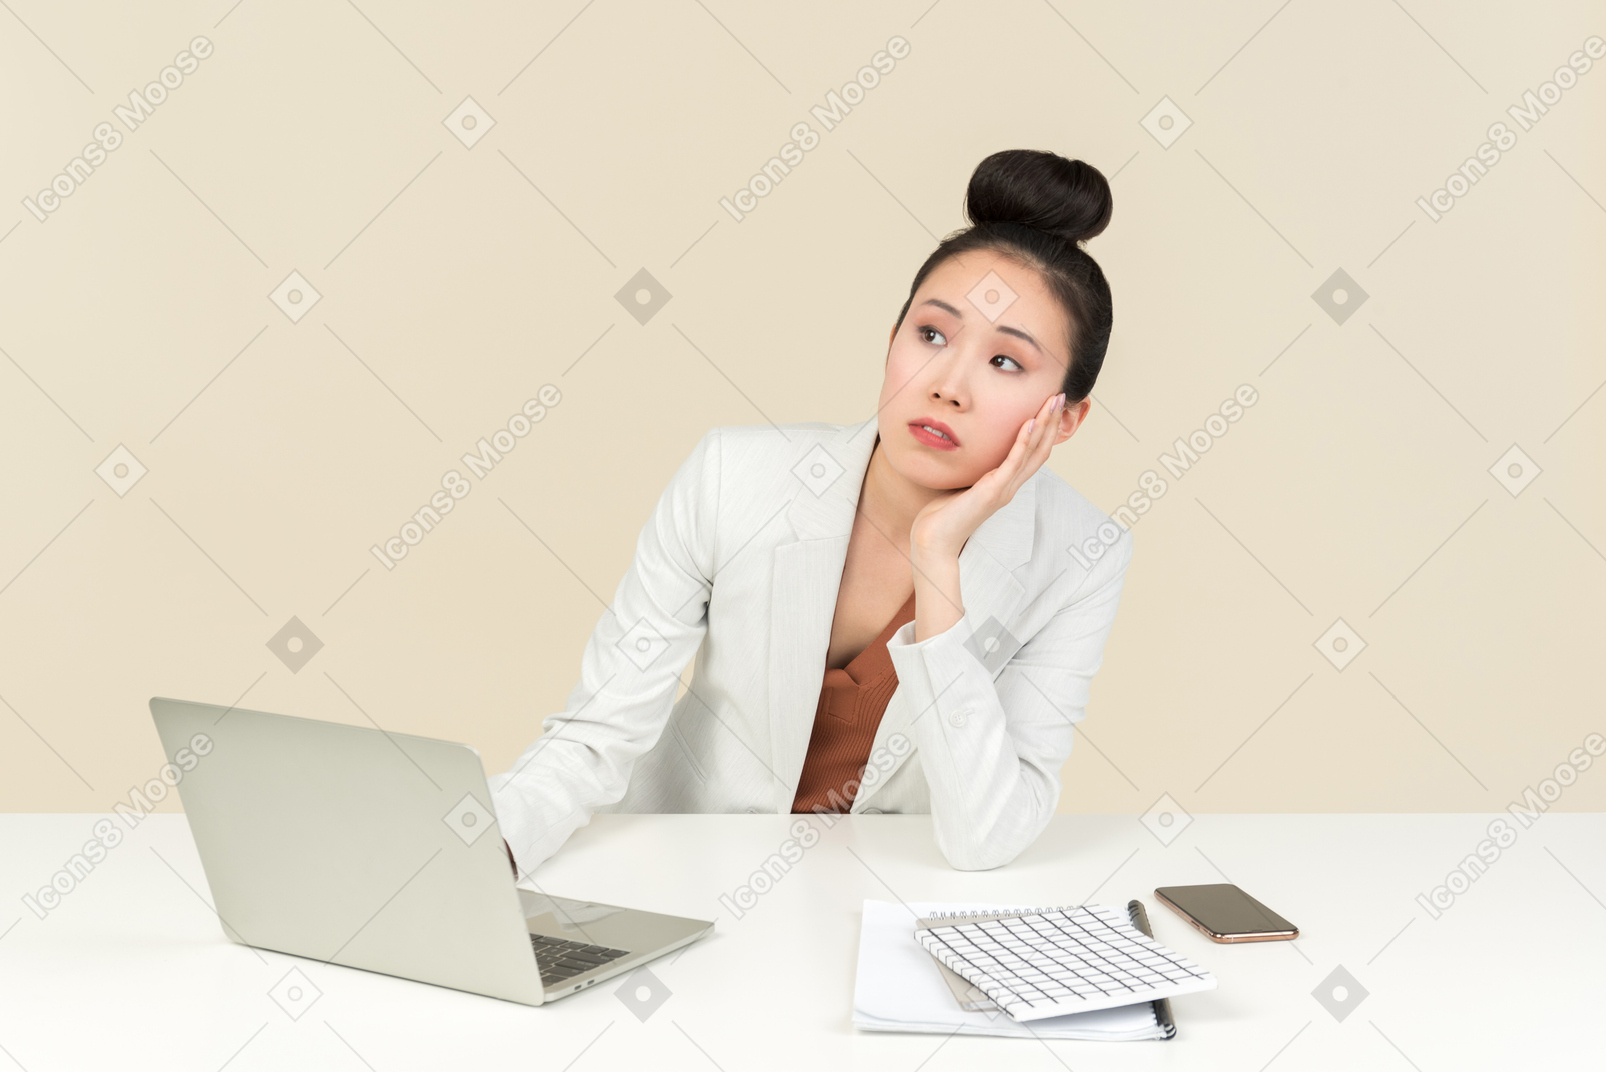 坐在书桌的梦想的年轻亚裔女性办公室工作者